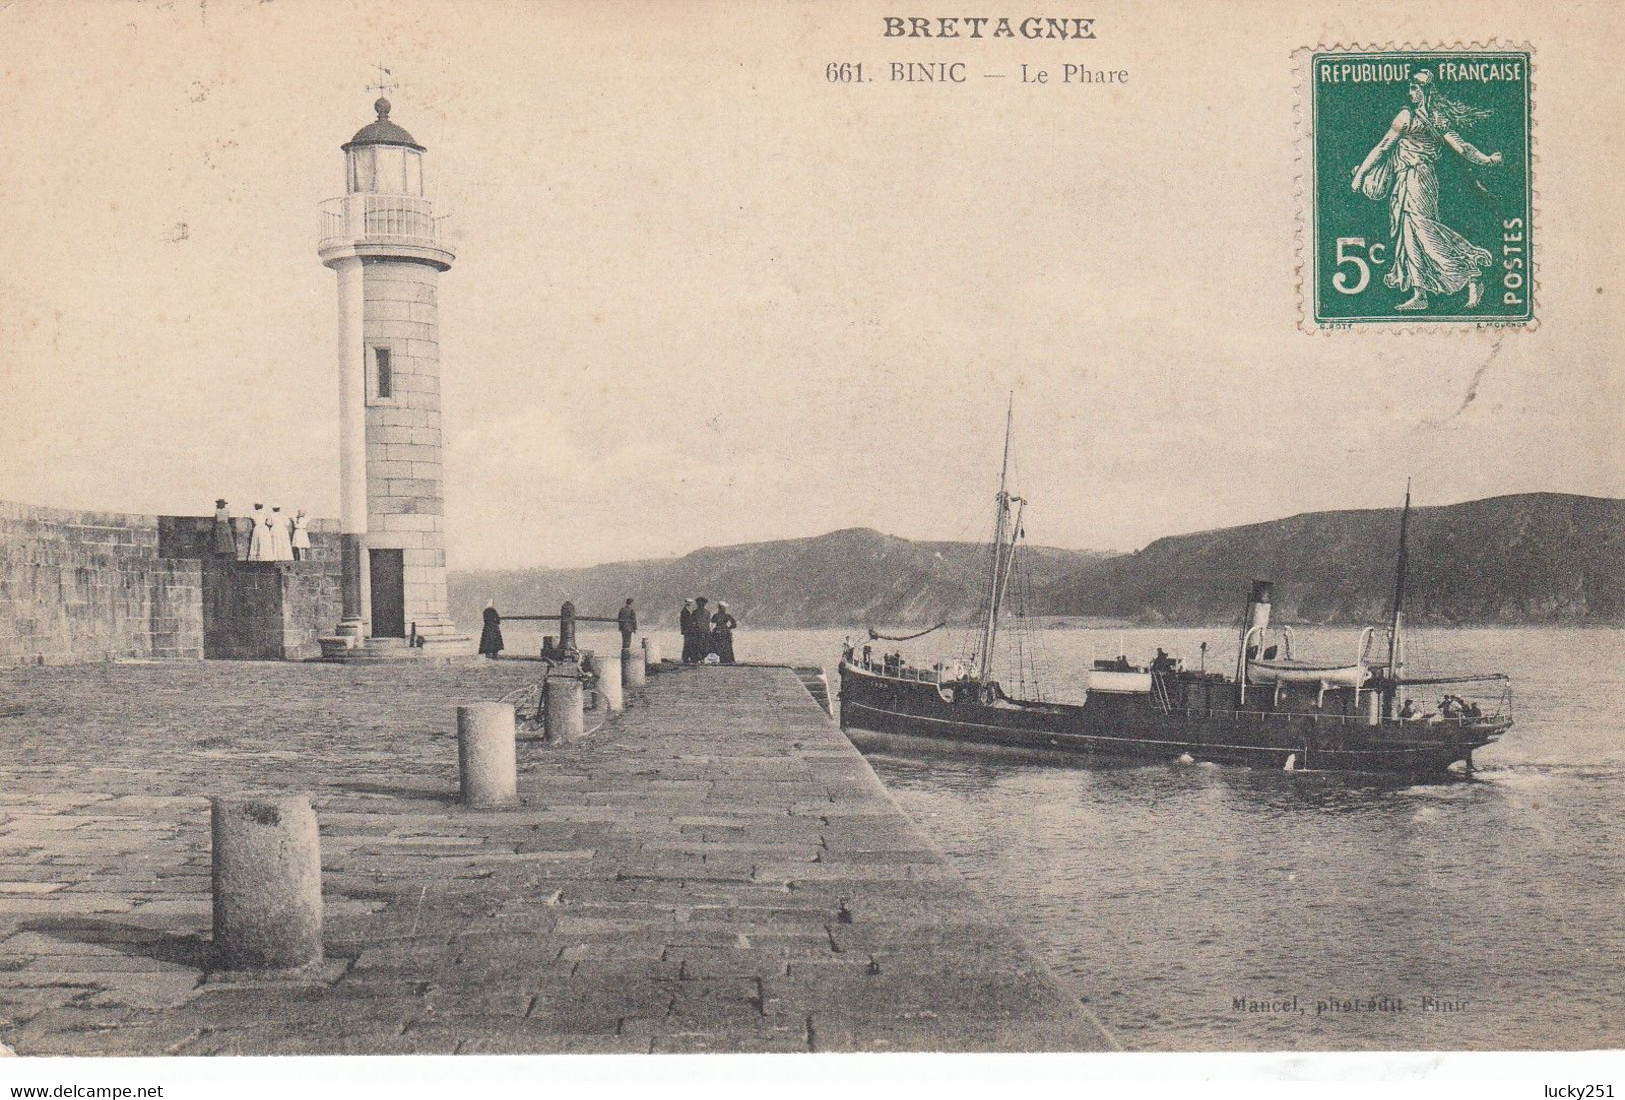 France - Phare - Binic - Le Phare - Circulée 19/08/1912 - Lighthouses